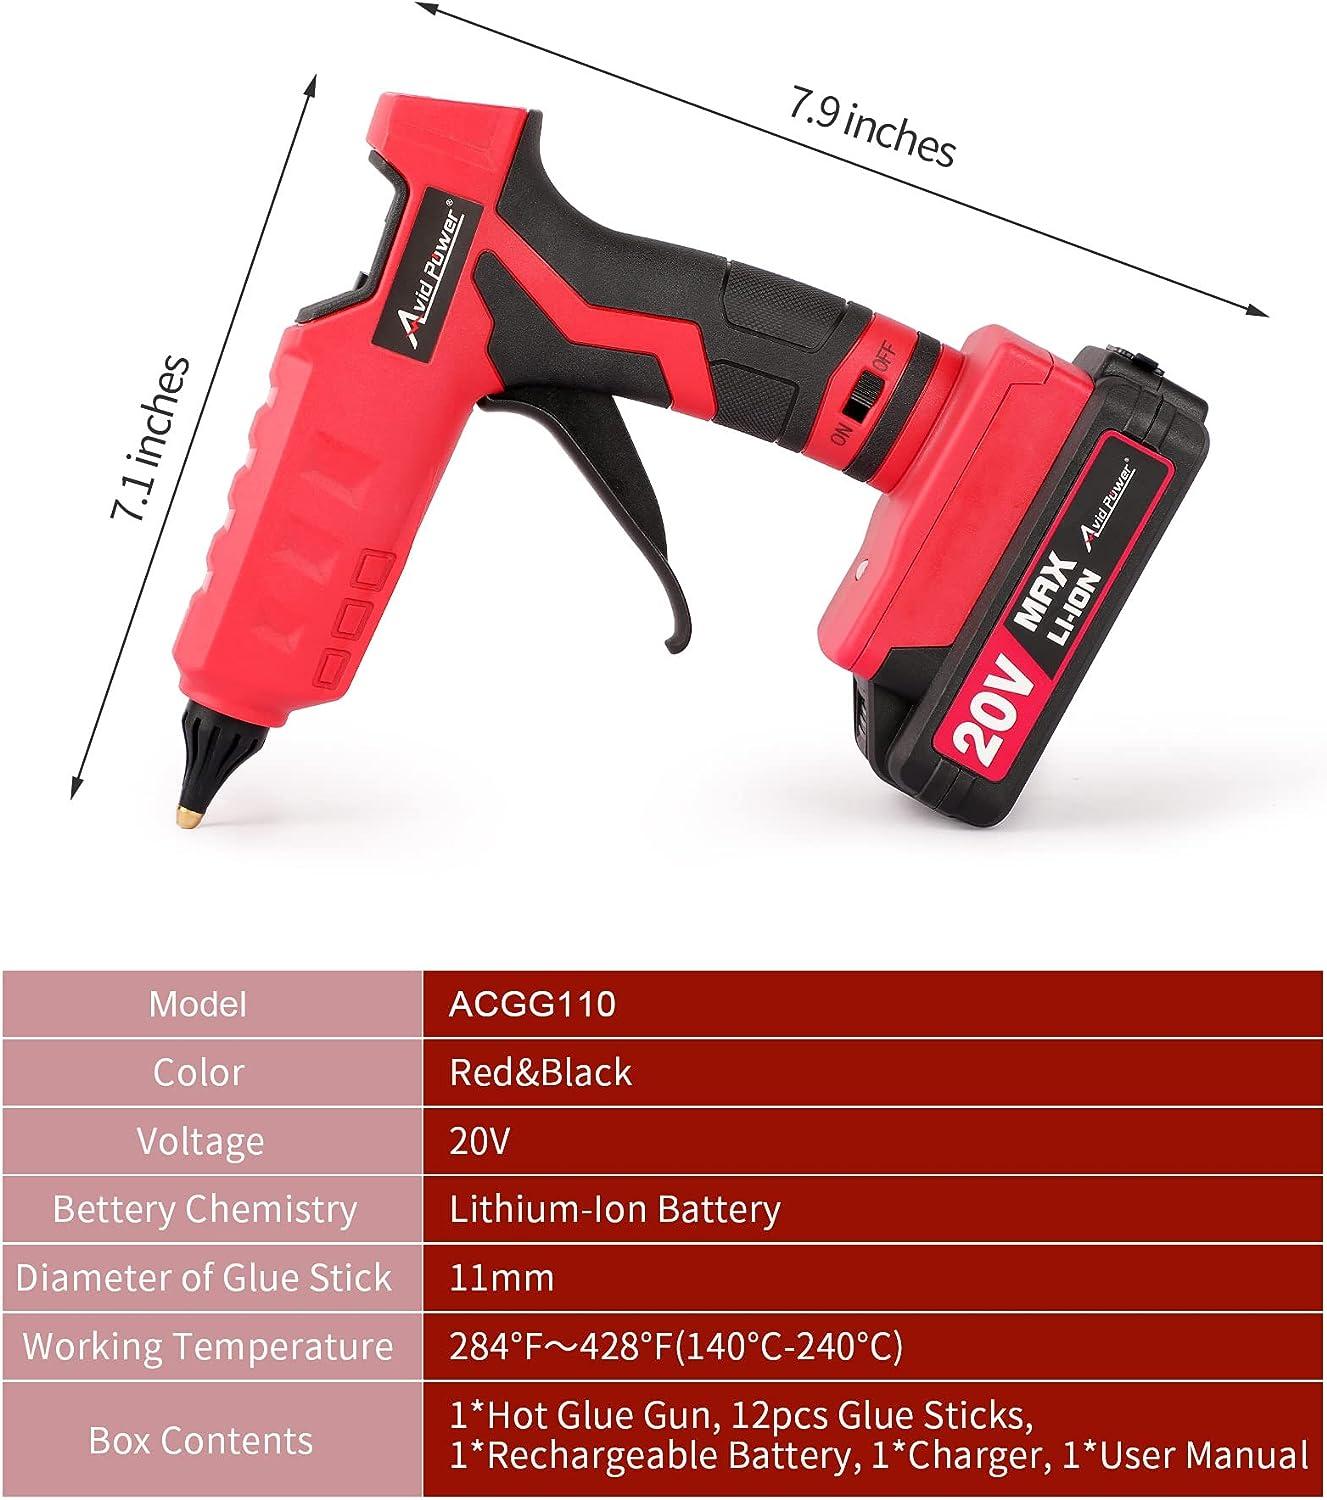 AVID POWER Hot Glue Gun Kit 20V Cordless Rechargeable Handheld